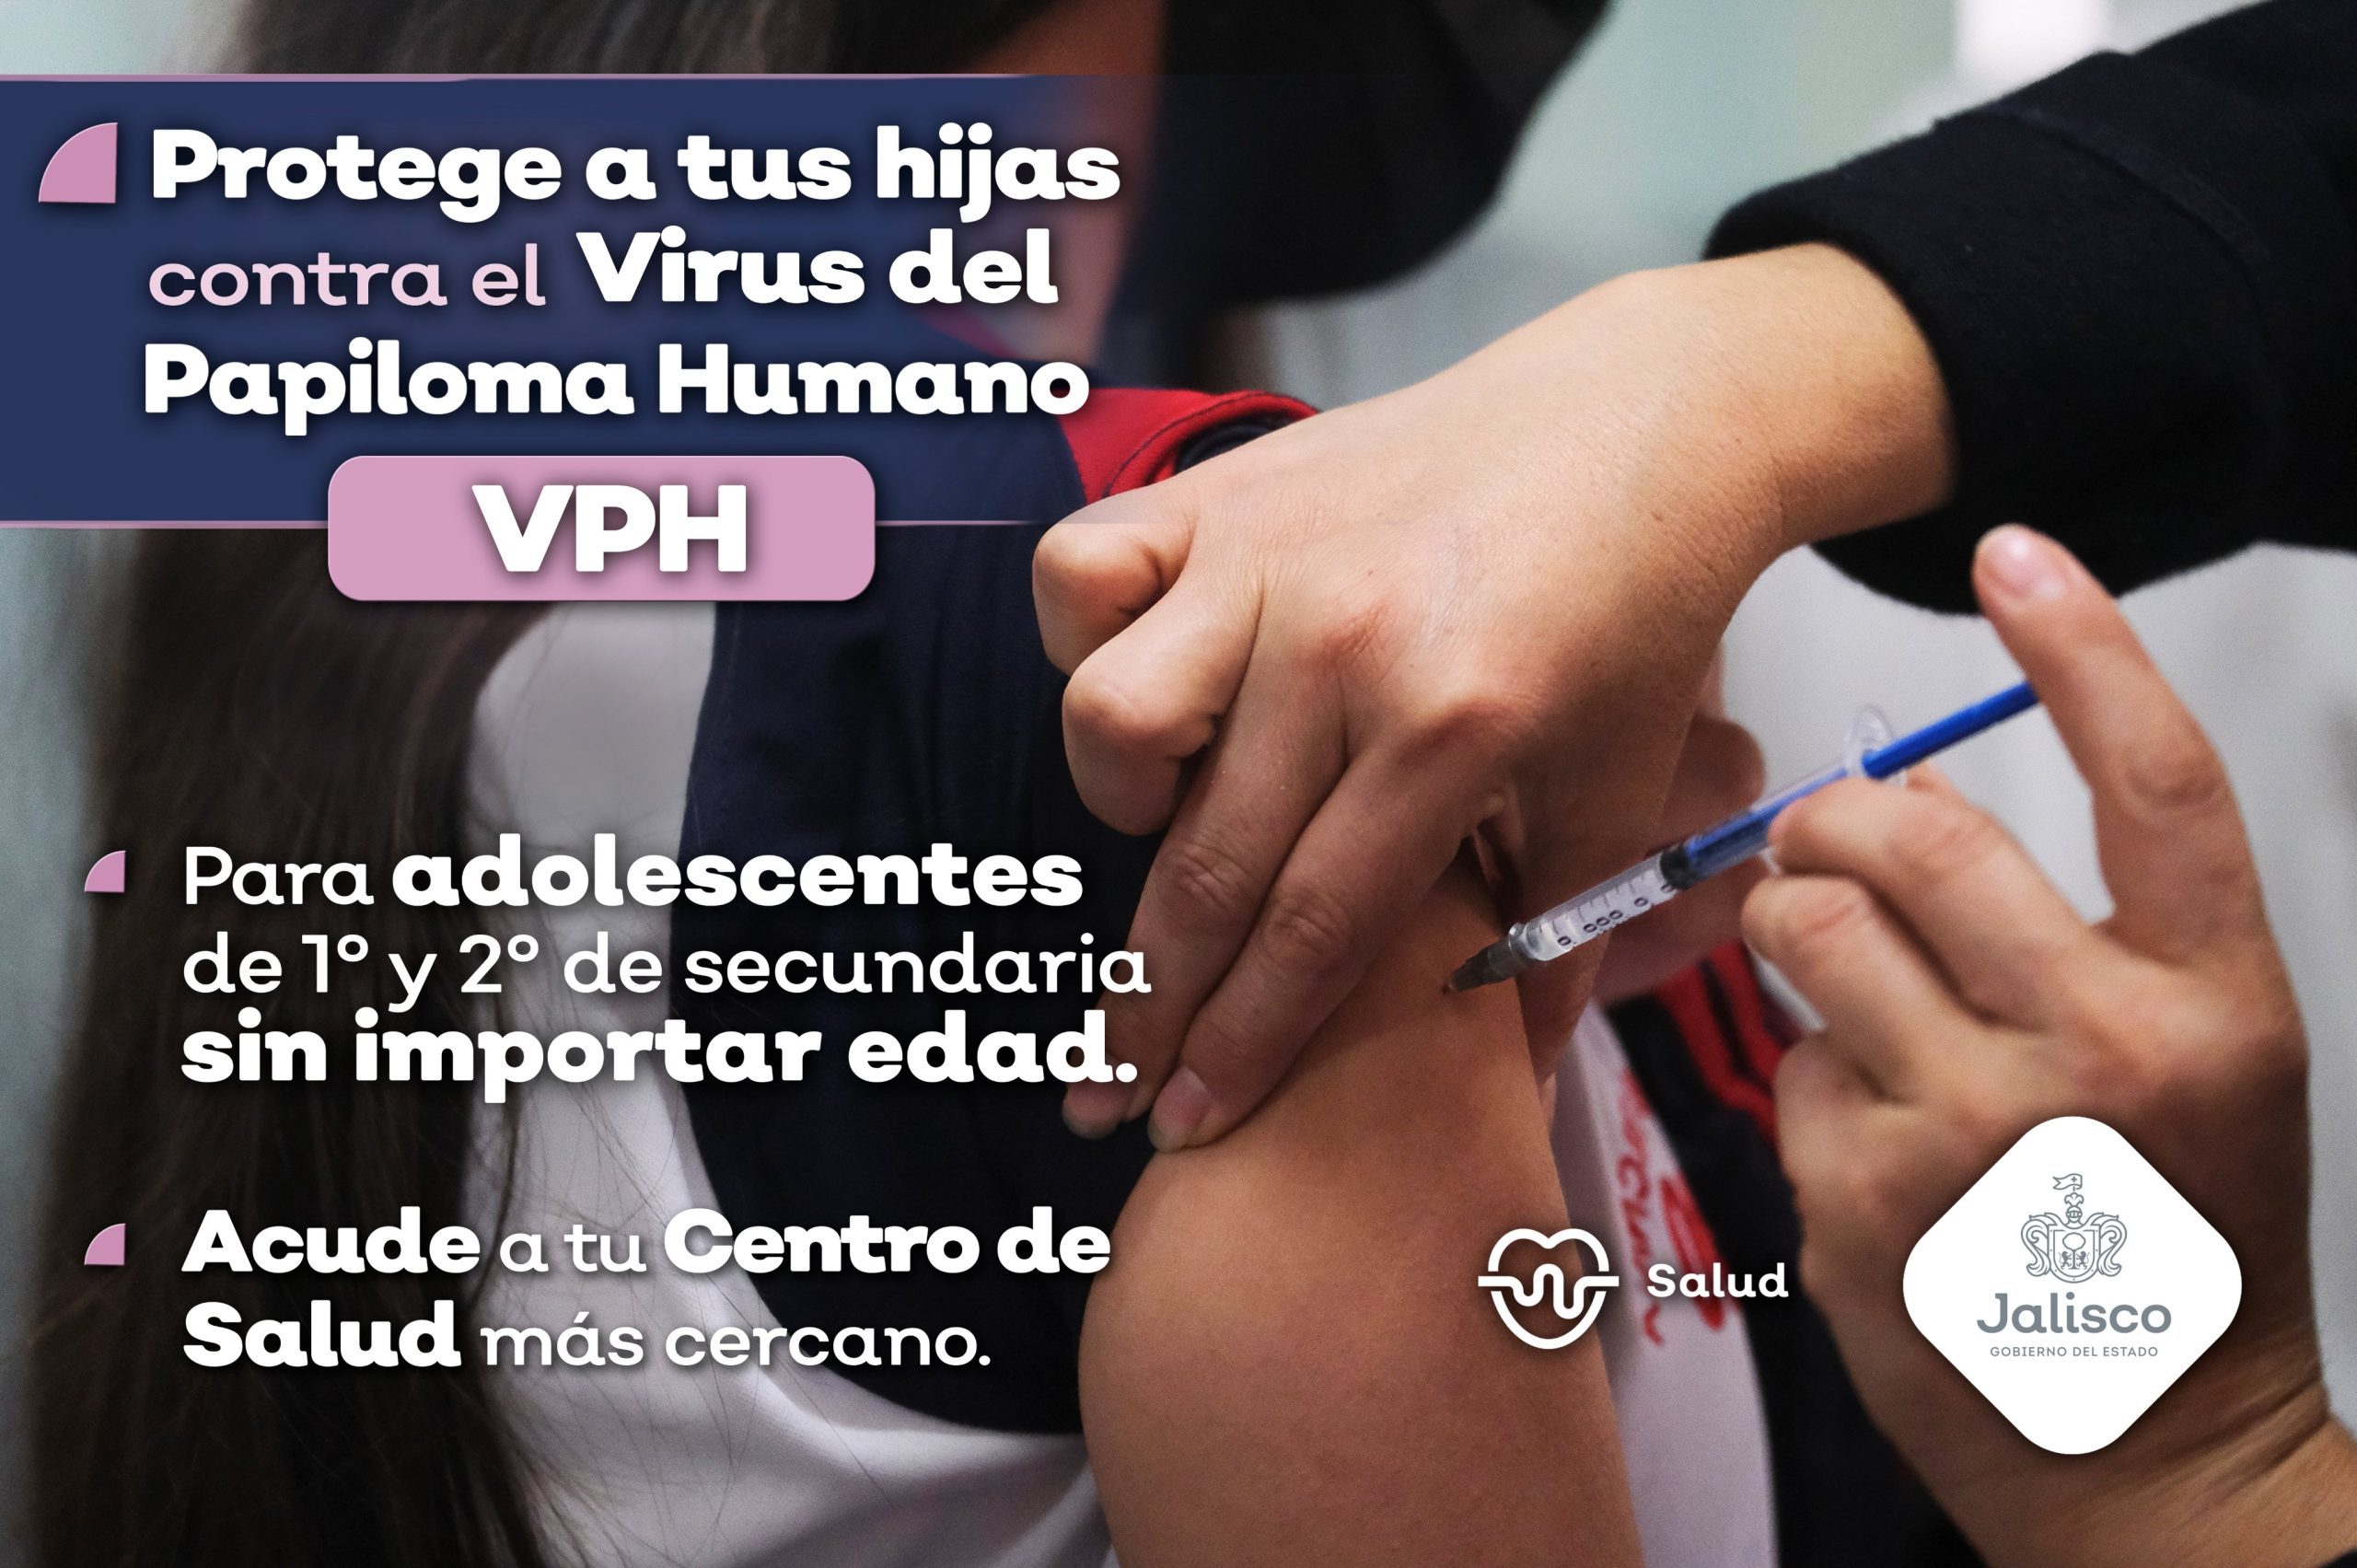 Jalisco intensifica su campaña de vacunación contra el VPH